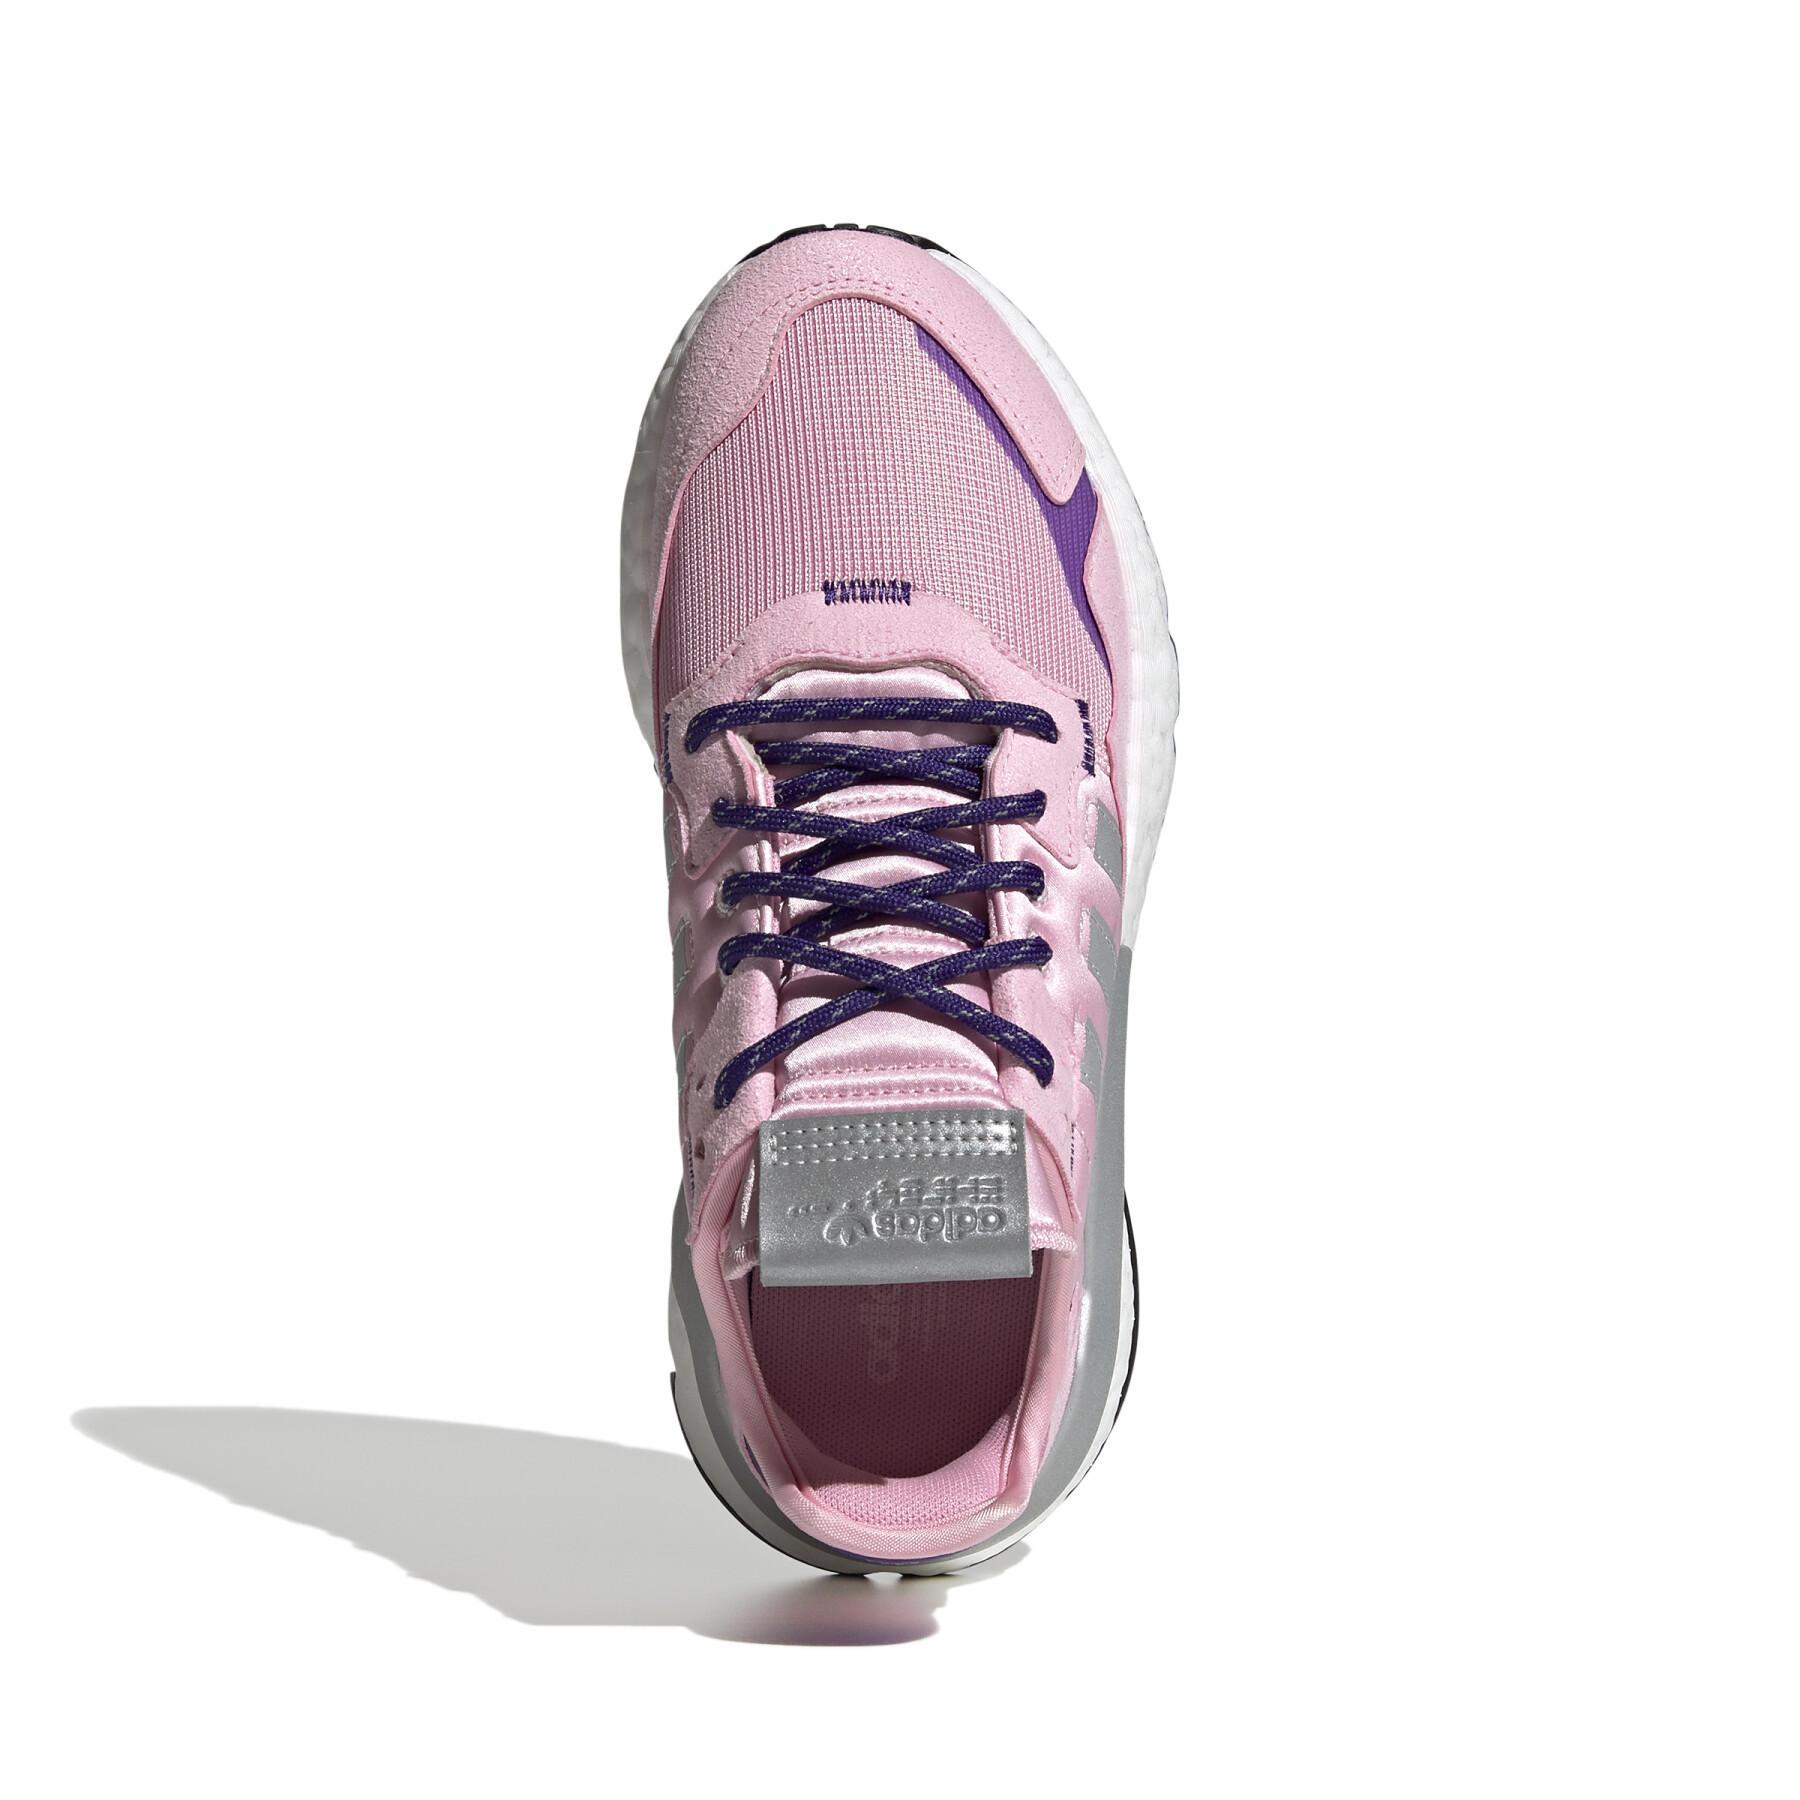 Women's sneakers adidas Originals Nite Jogger